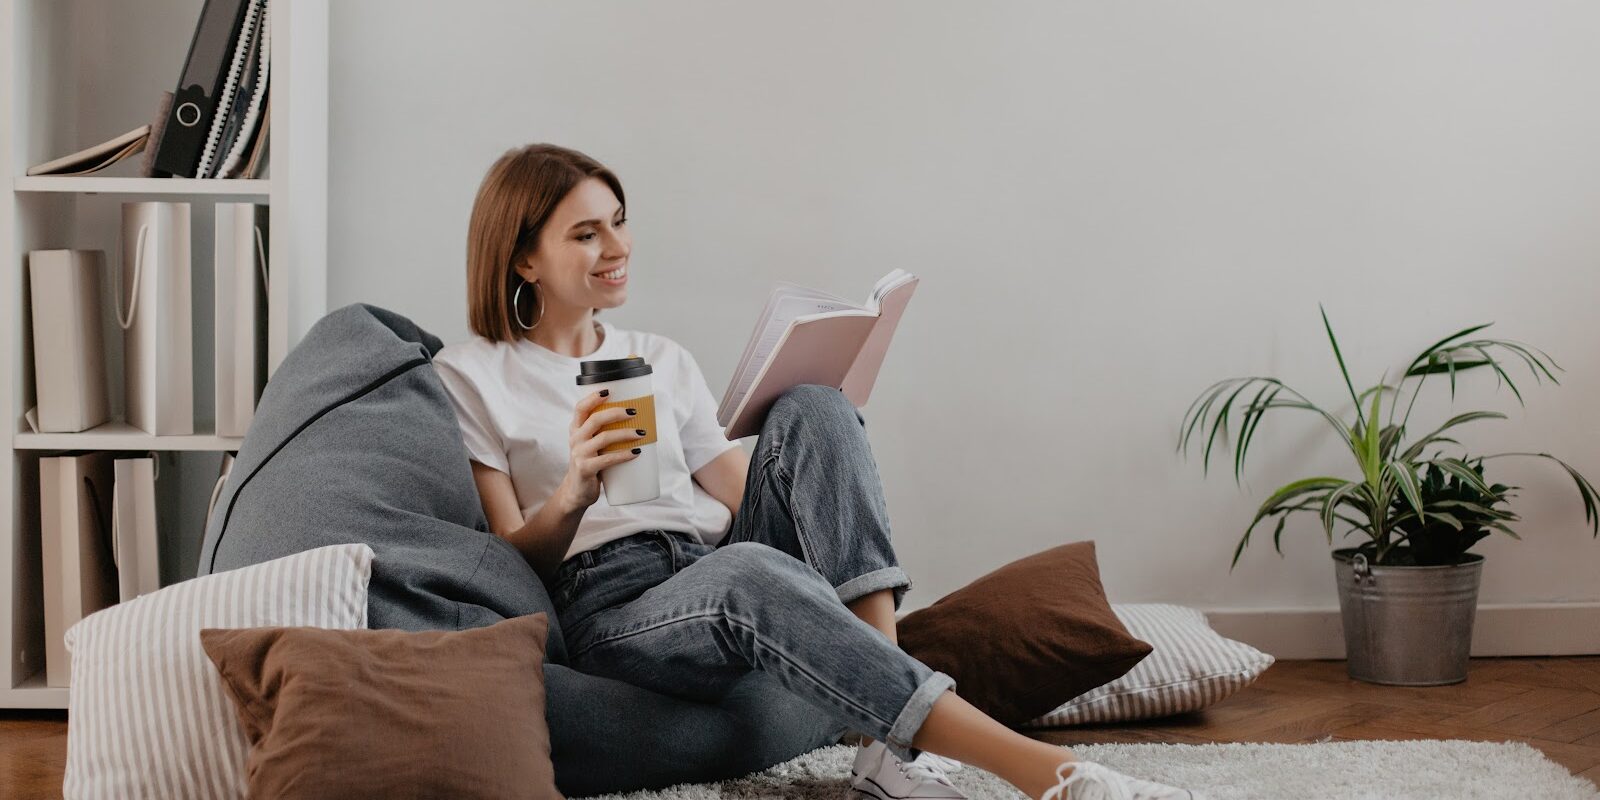 vrouw ontspant met een boek en een kop koffie om spierklachten te voorkomen